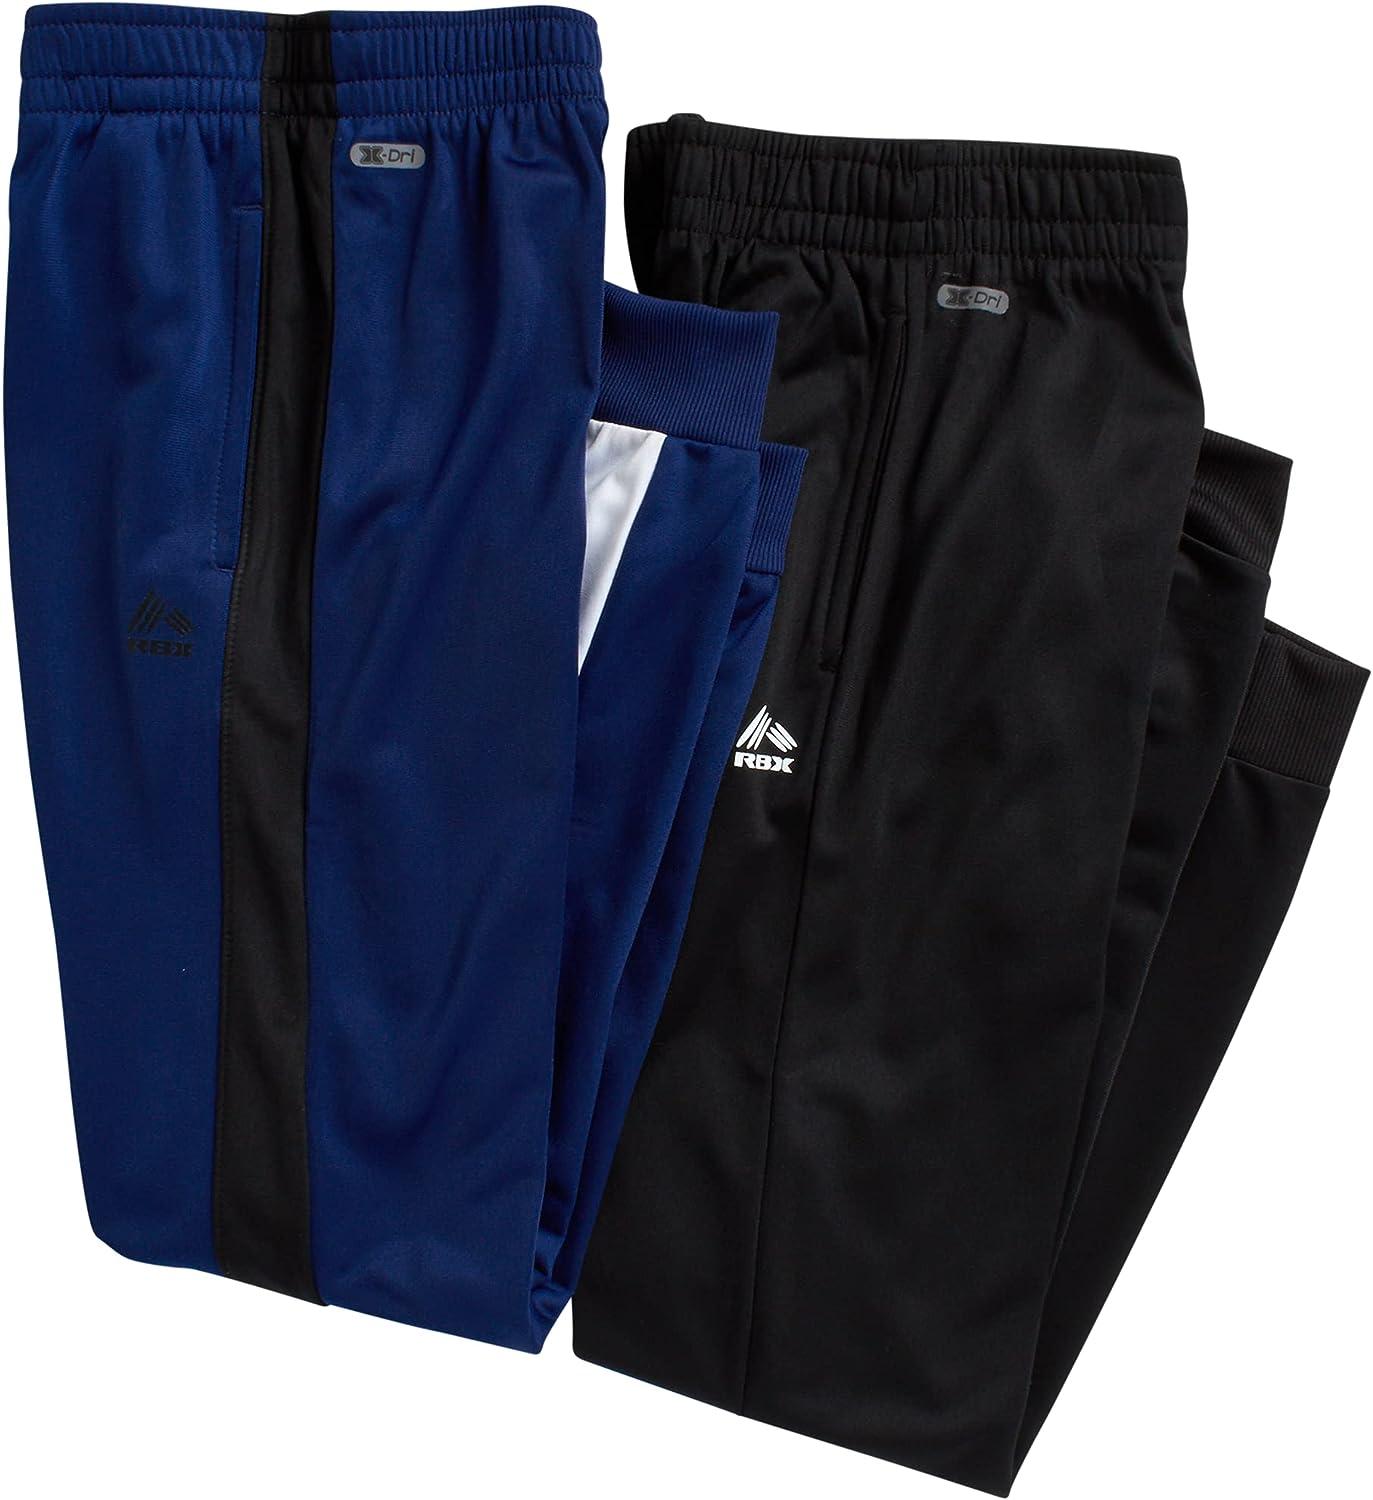 RBX Boy's Sweatpants - 2 Pack Active Tricot Jogger Pants (Size: 2T